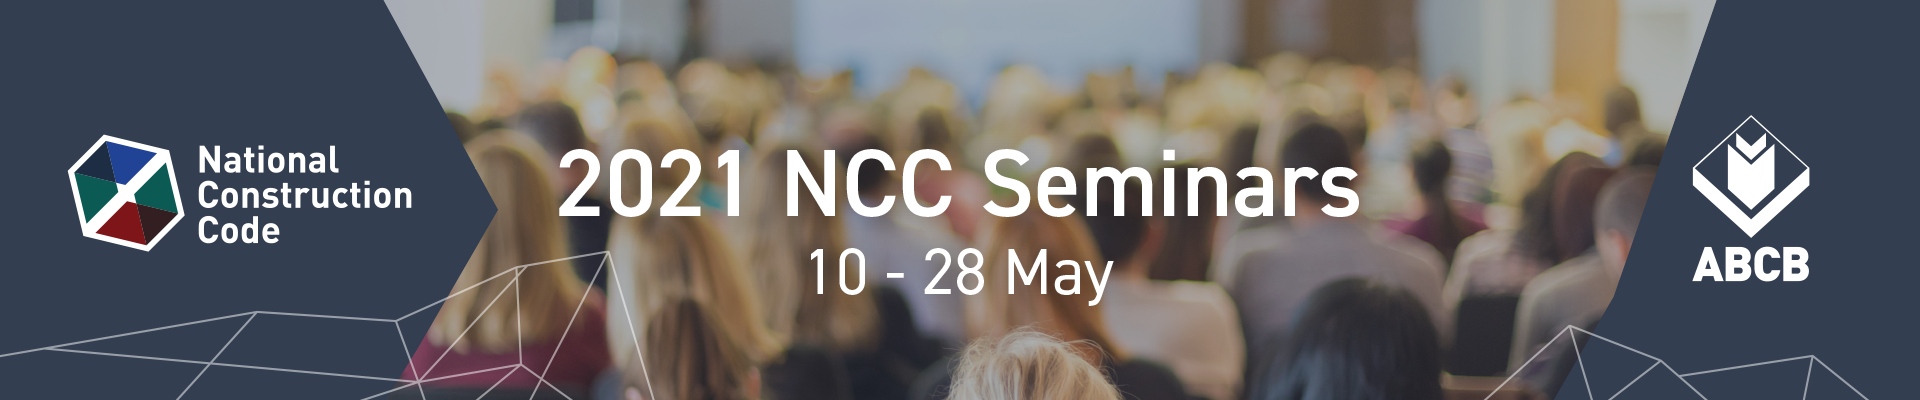 2021 NCC Seminars